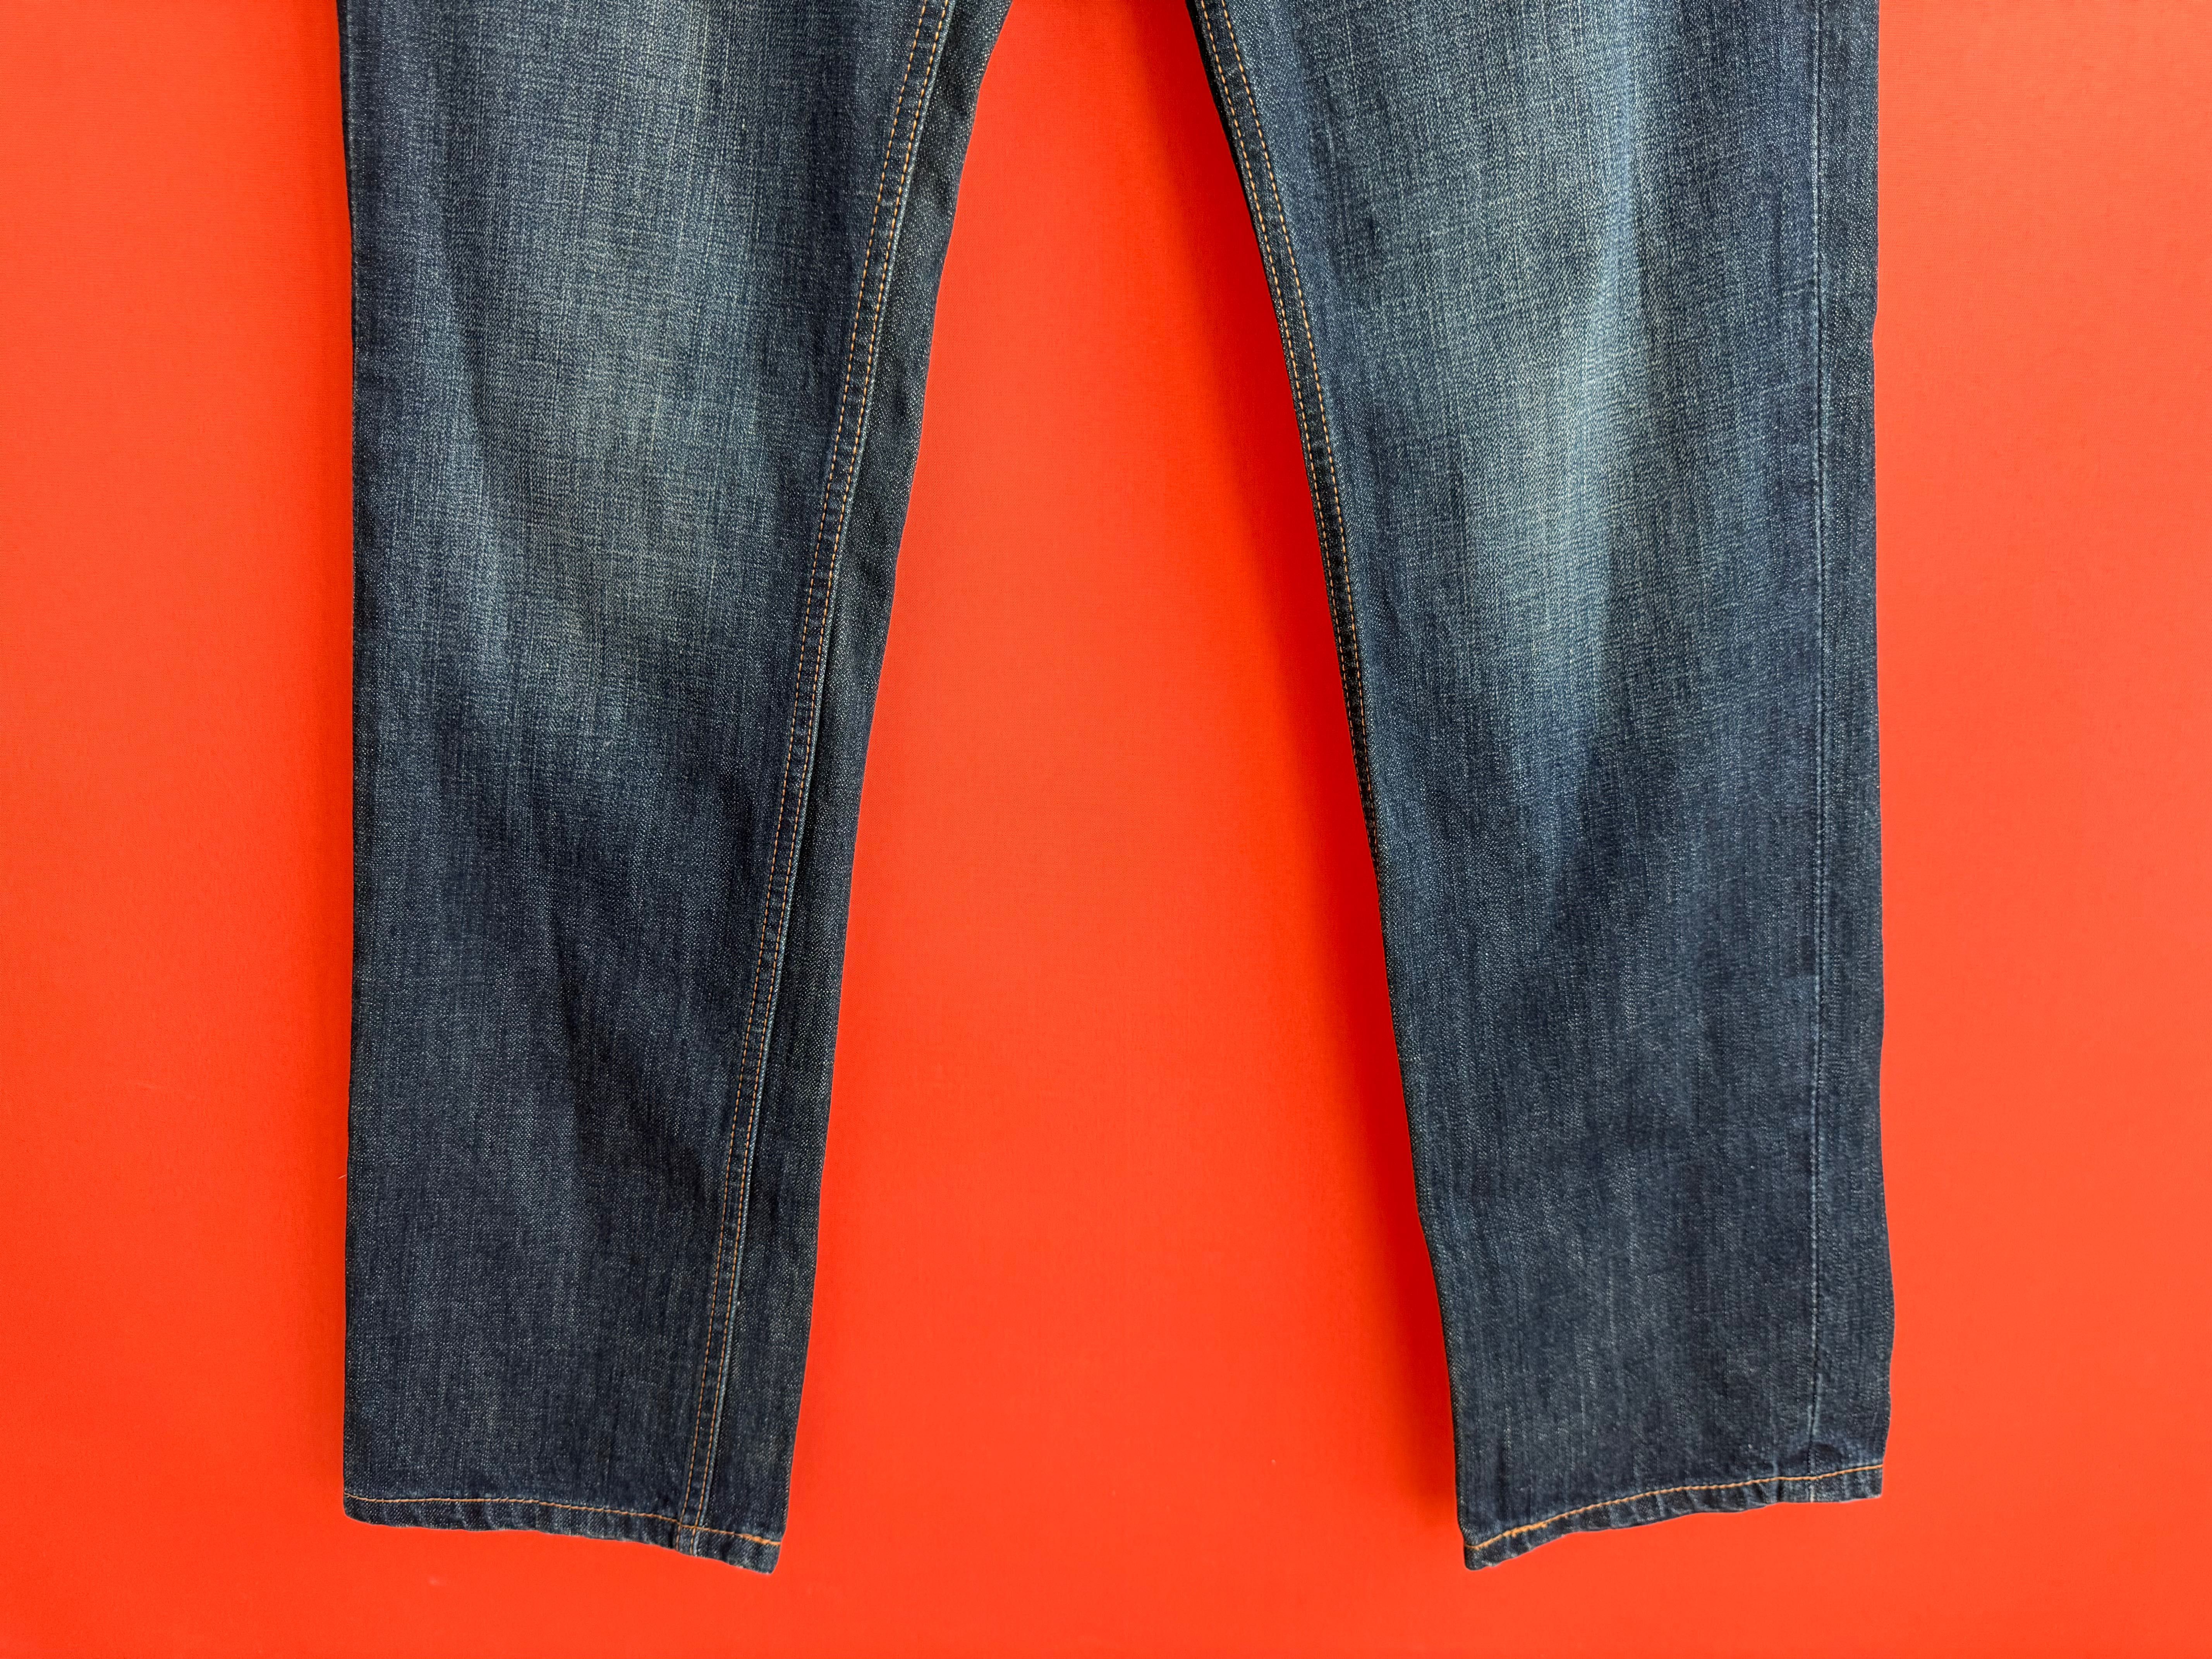 Levis Levi’s 511 оригинал мужские джинсы штаны размер 32 33 Б У